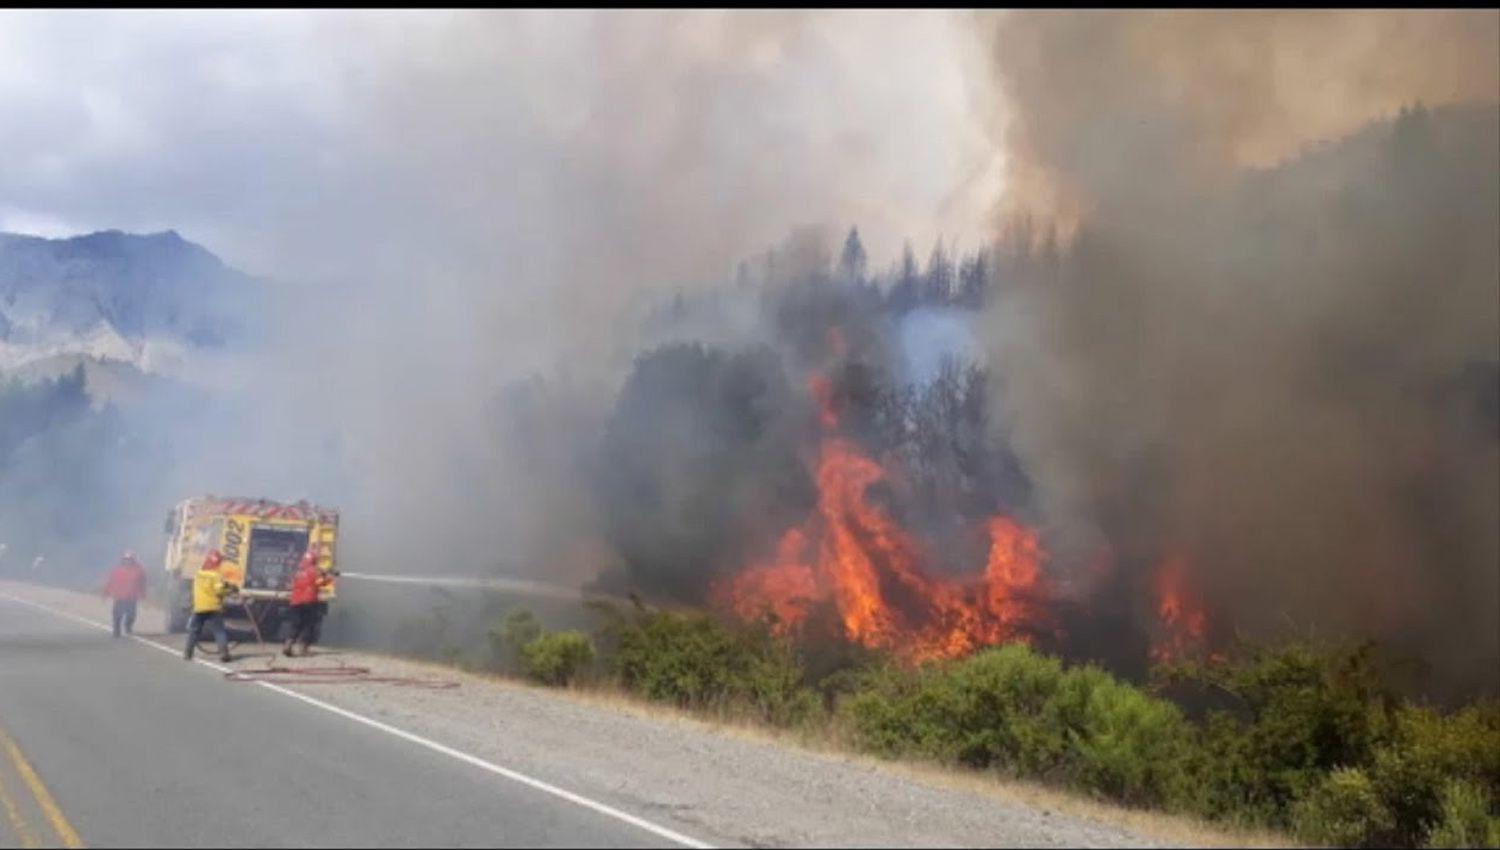 El incendio en El Bolsoacuten causoacute grave dantildeo ambiental y llegoacute a Chubut